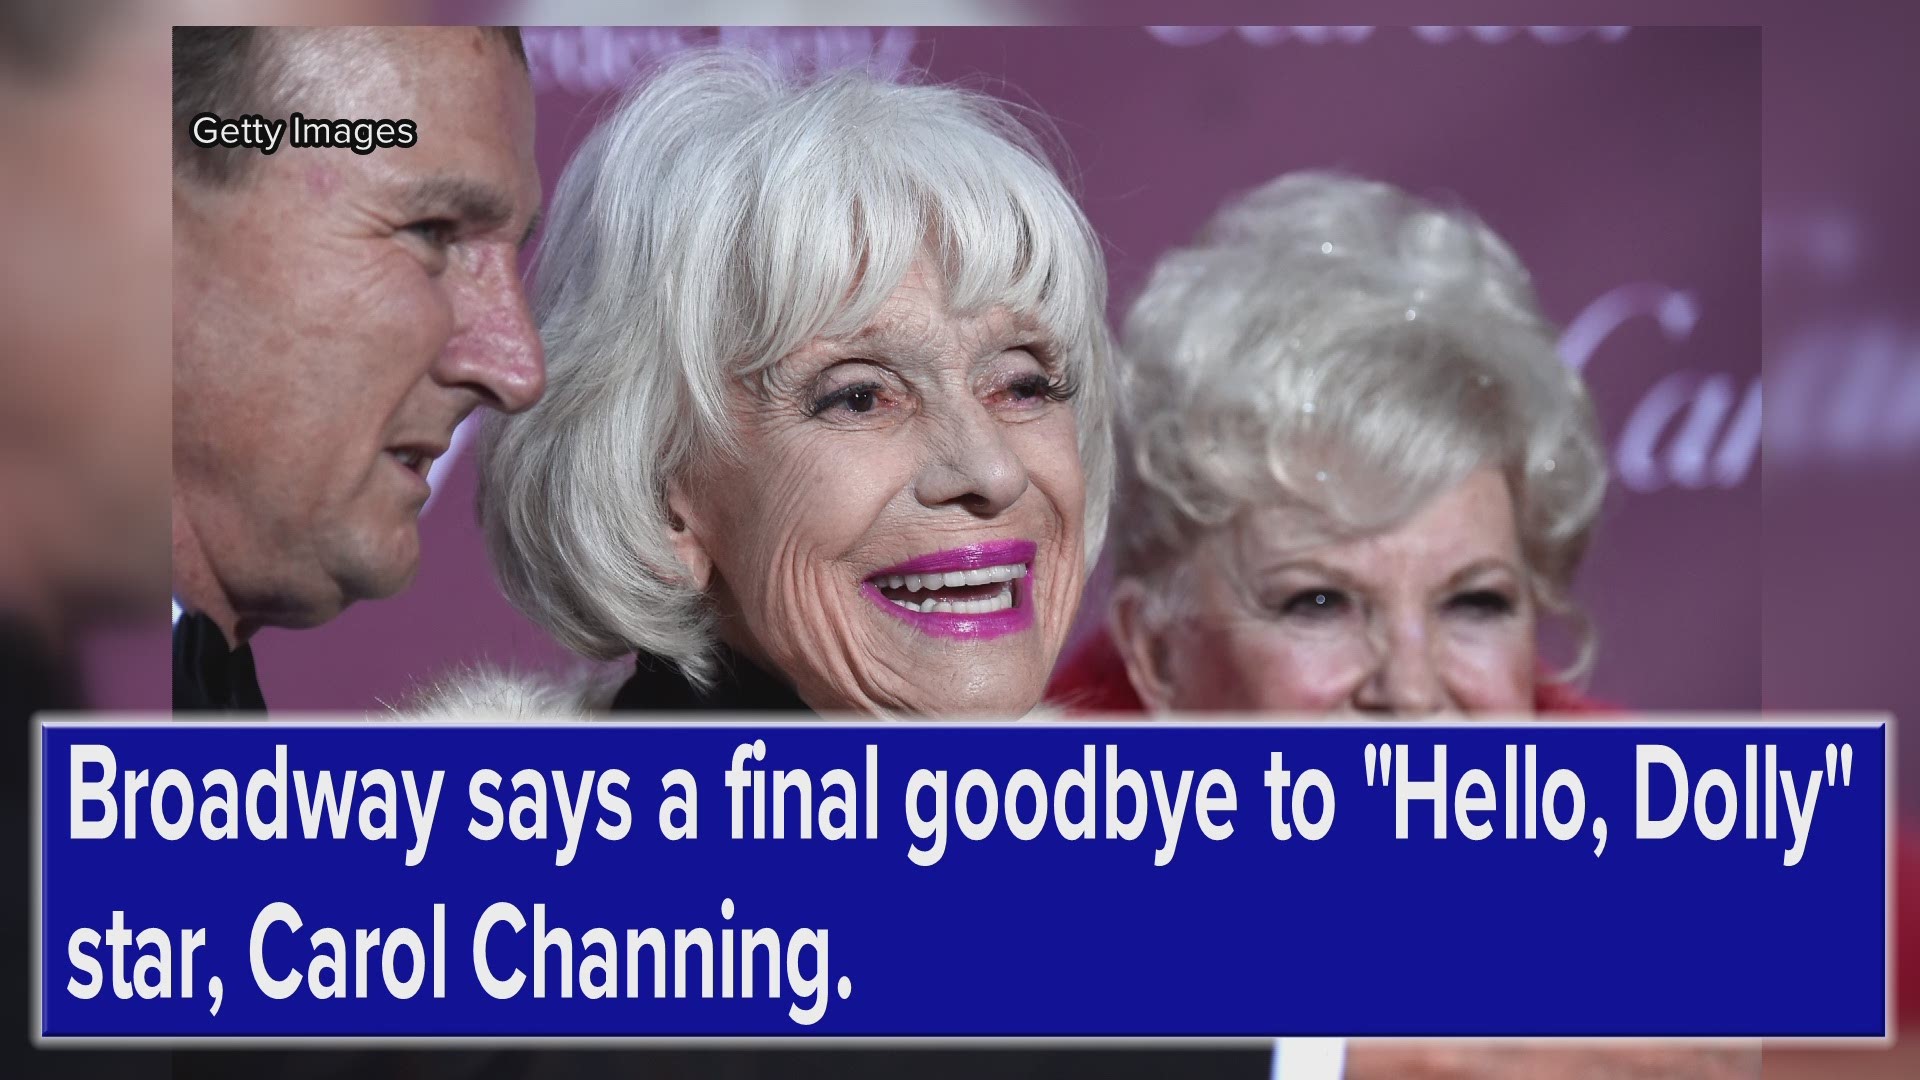 Carol Channing passes away at age 97